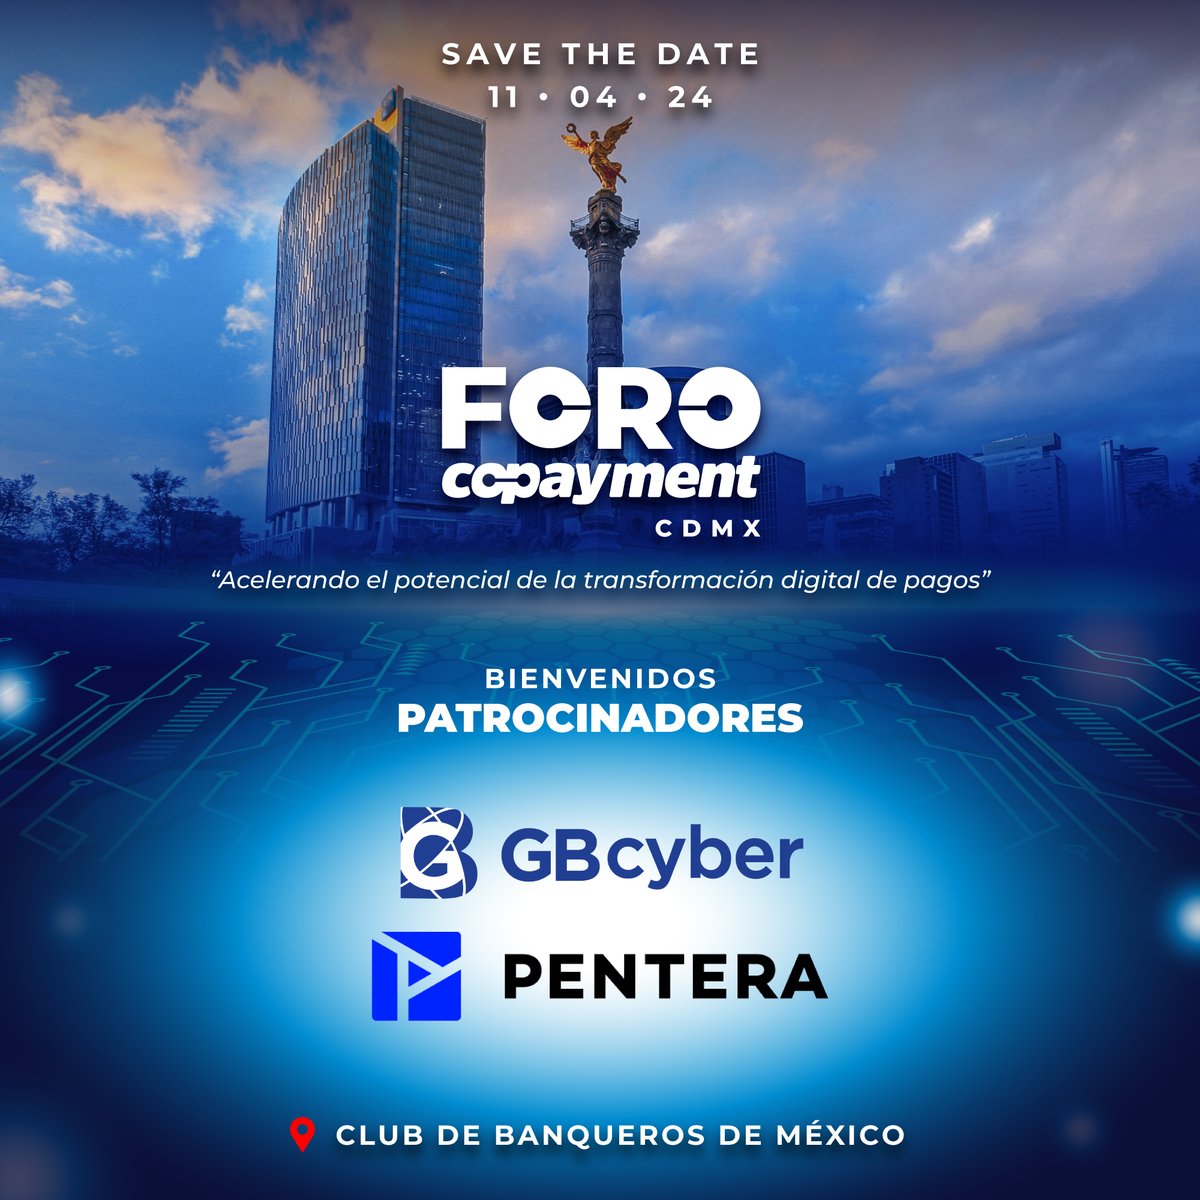 ¡Le damos la bienvenida a Pentera / GBcyber como patrocinador del FORO COPAYMENT CDMX! 📆 11 de Abril, 2024 📍 Club de Banqueros de México ➡️ Regístrate: foro.copayment.com.mx/#/signup #forocopaymentcdmx